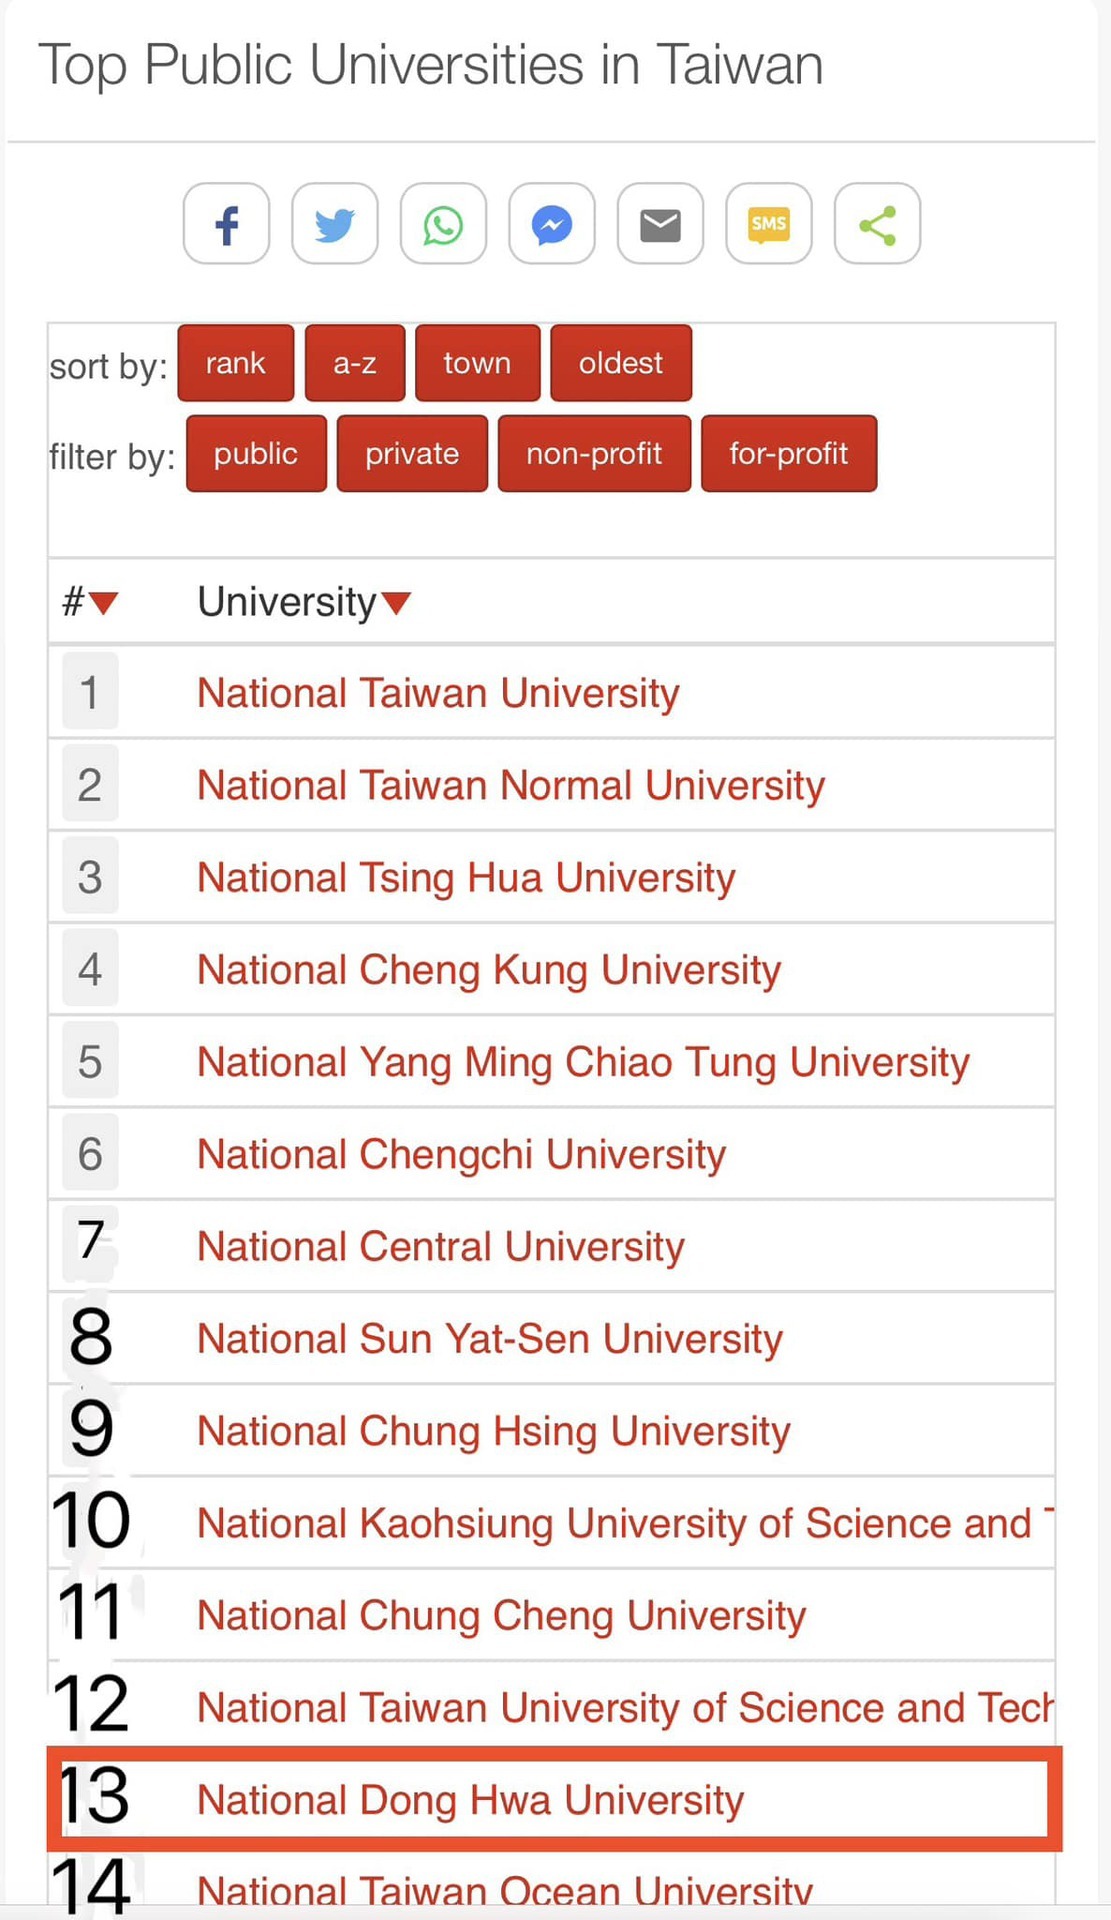 東華大學於uniRank臺灣公立大學排名第13名